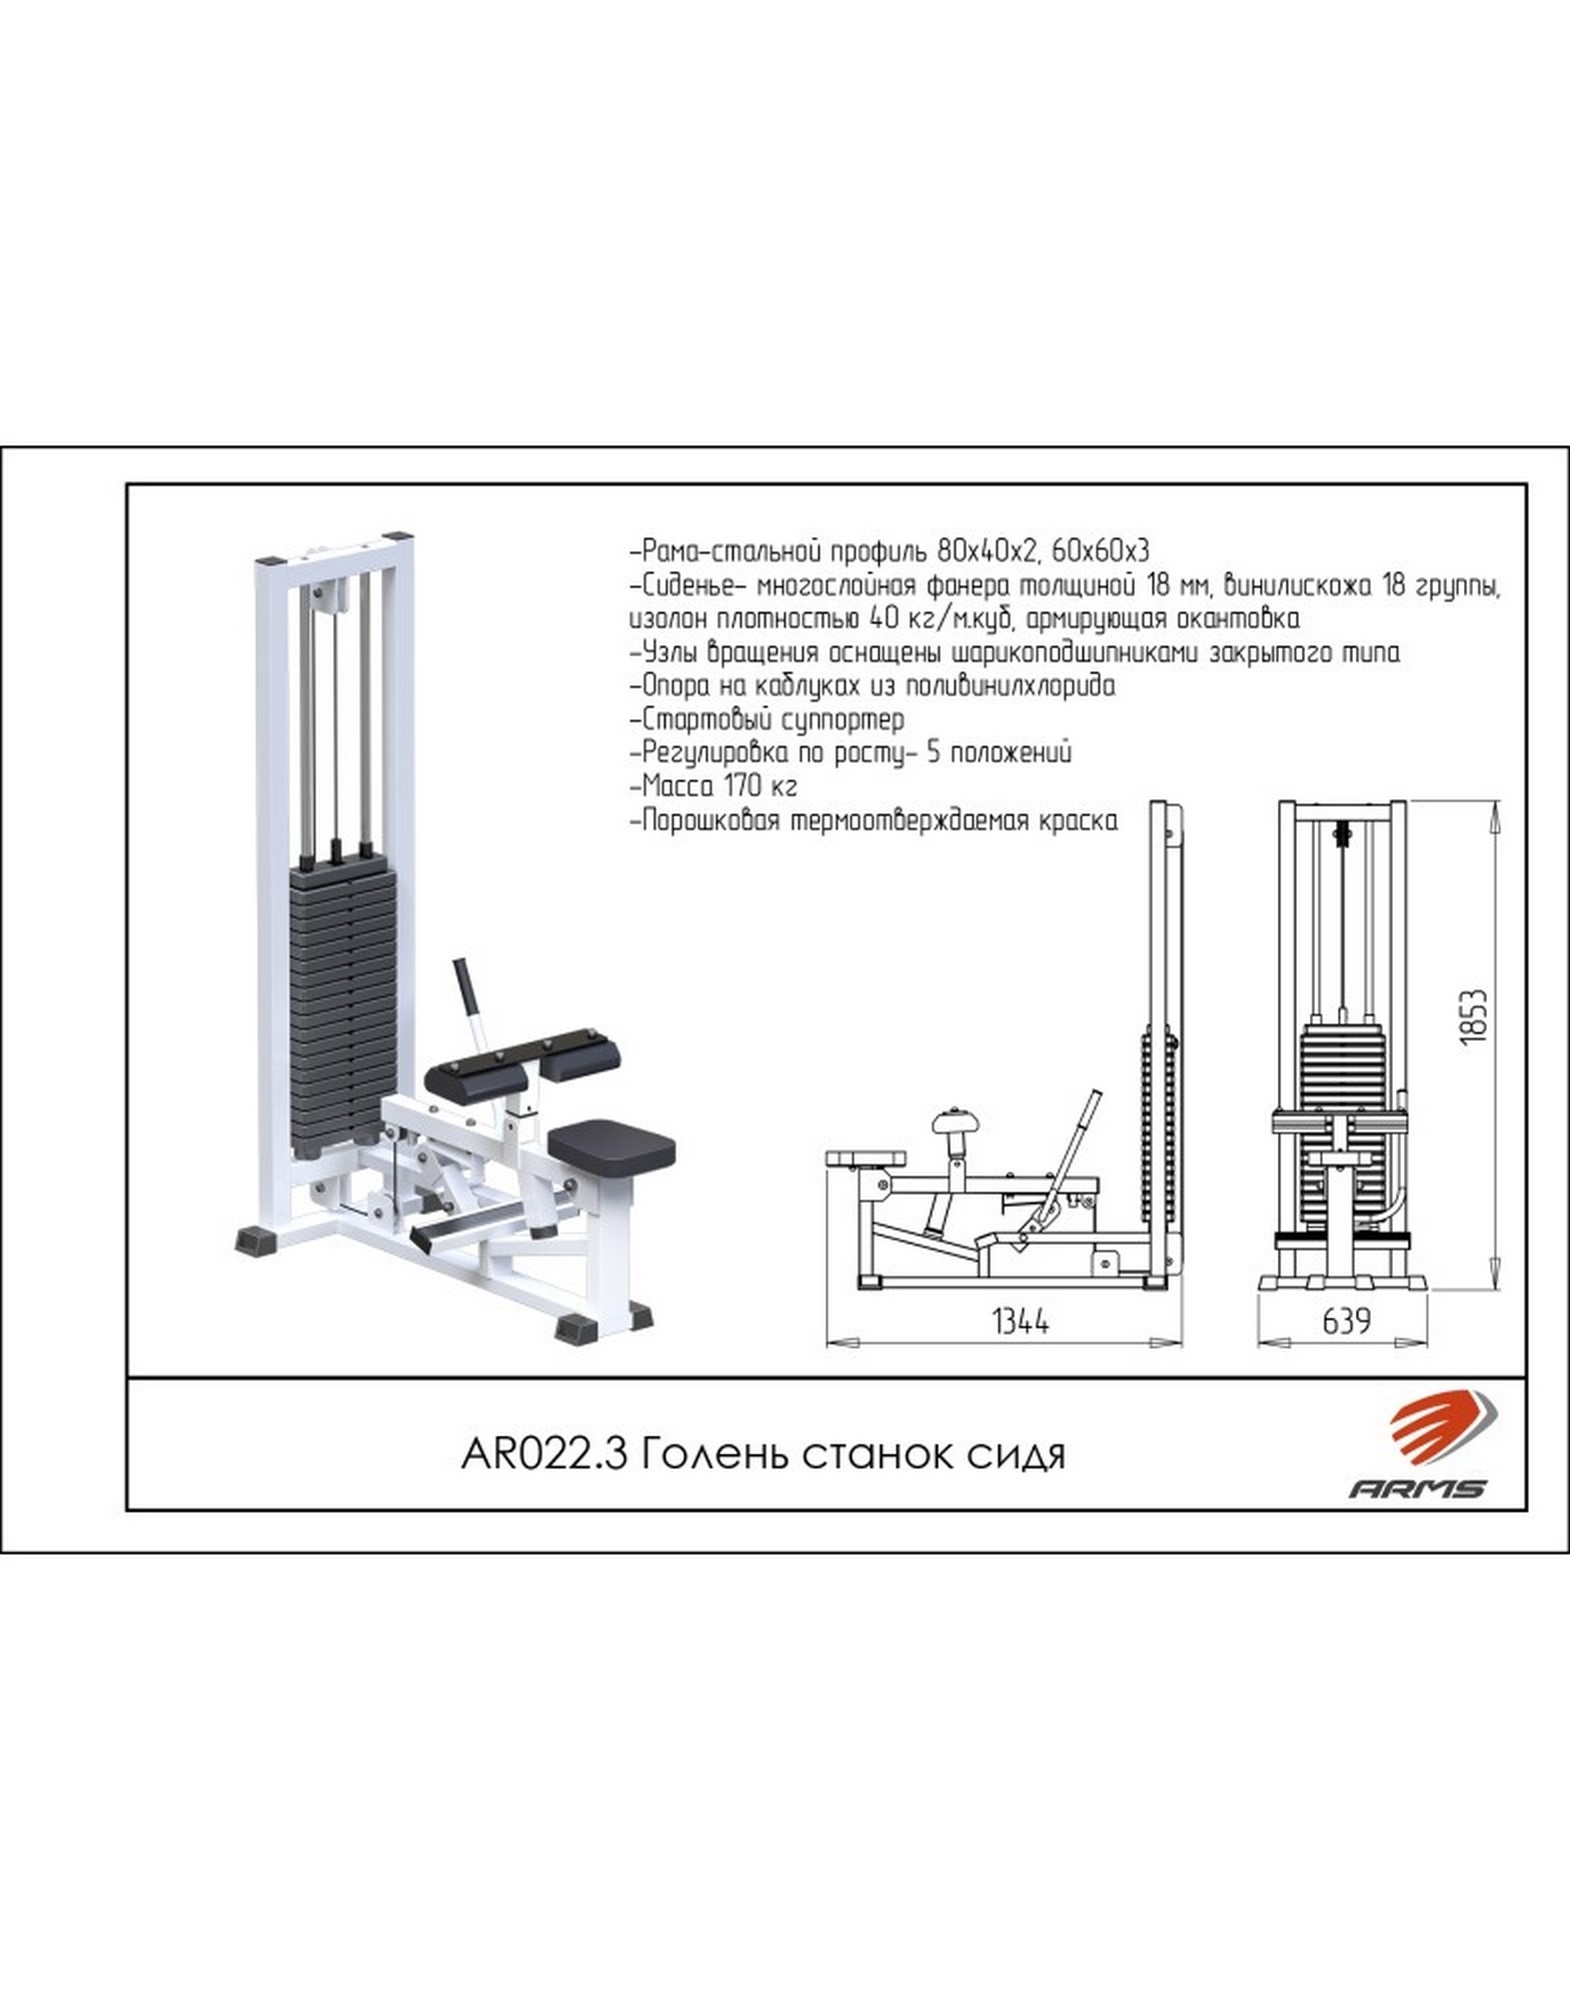 Голень станок сидя ARMS (стек 100кг) AR022.3 1570_2000